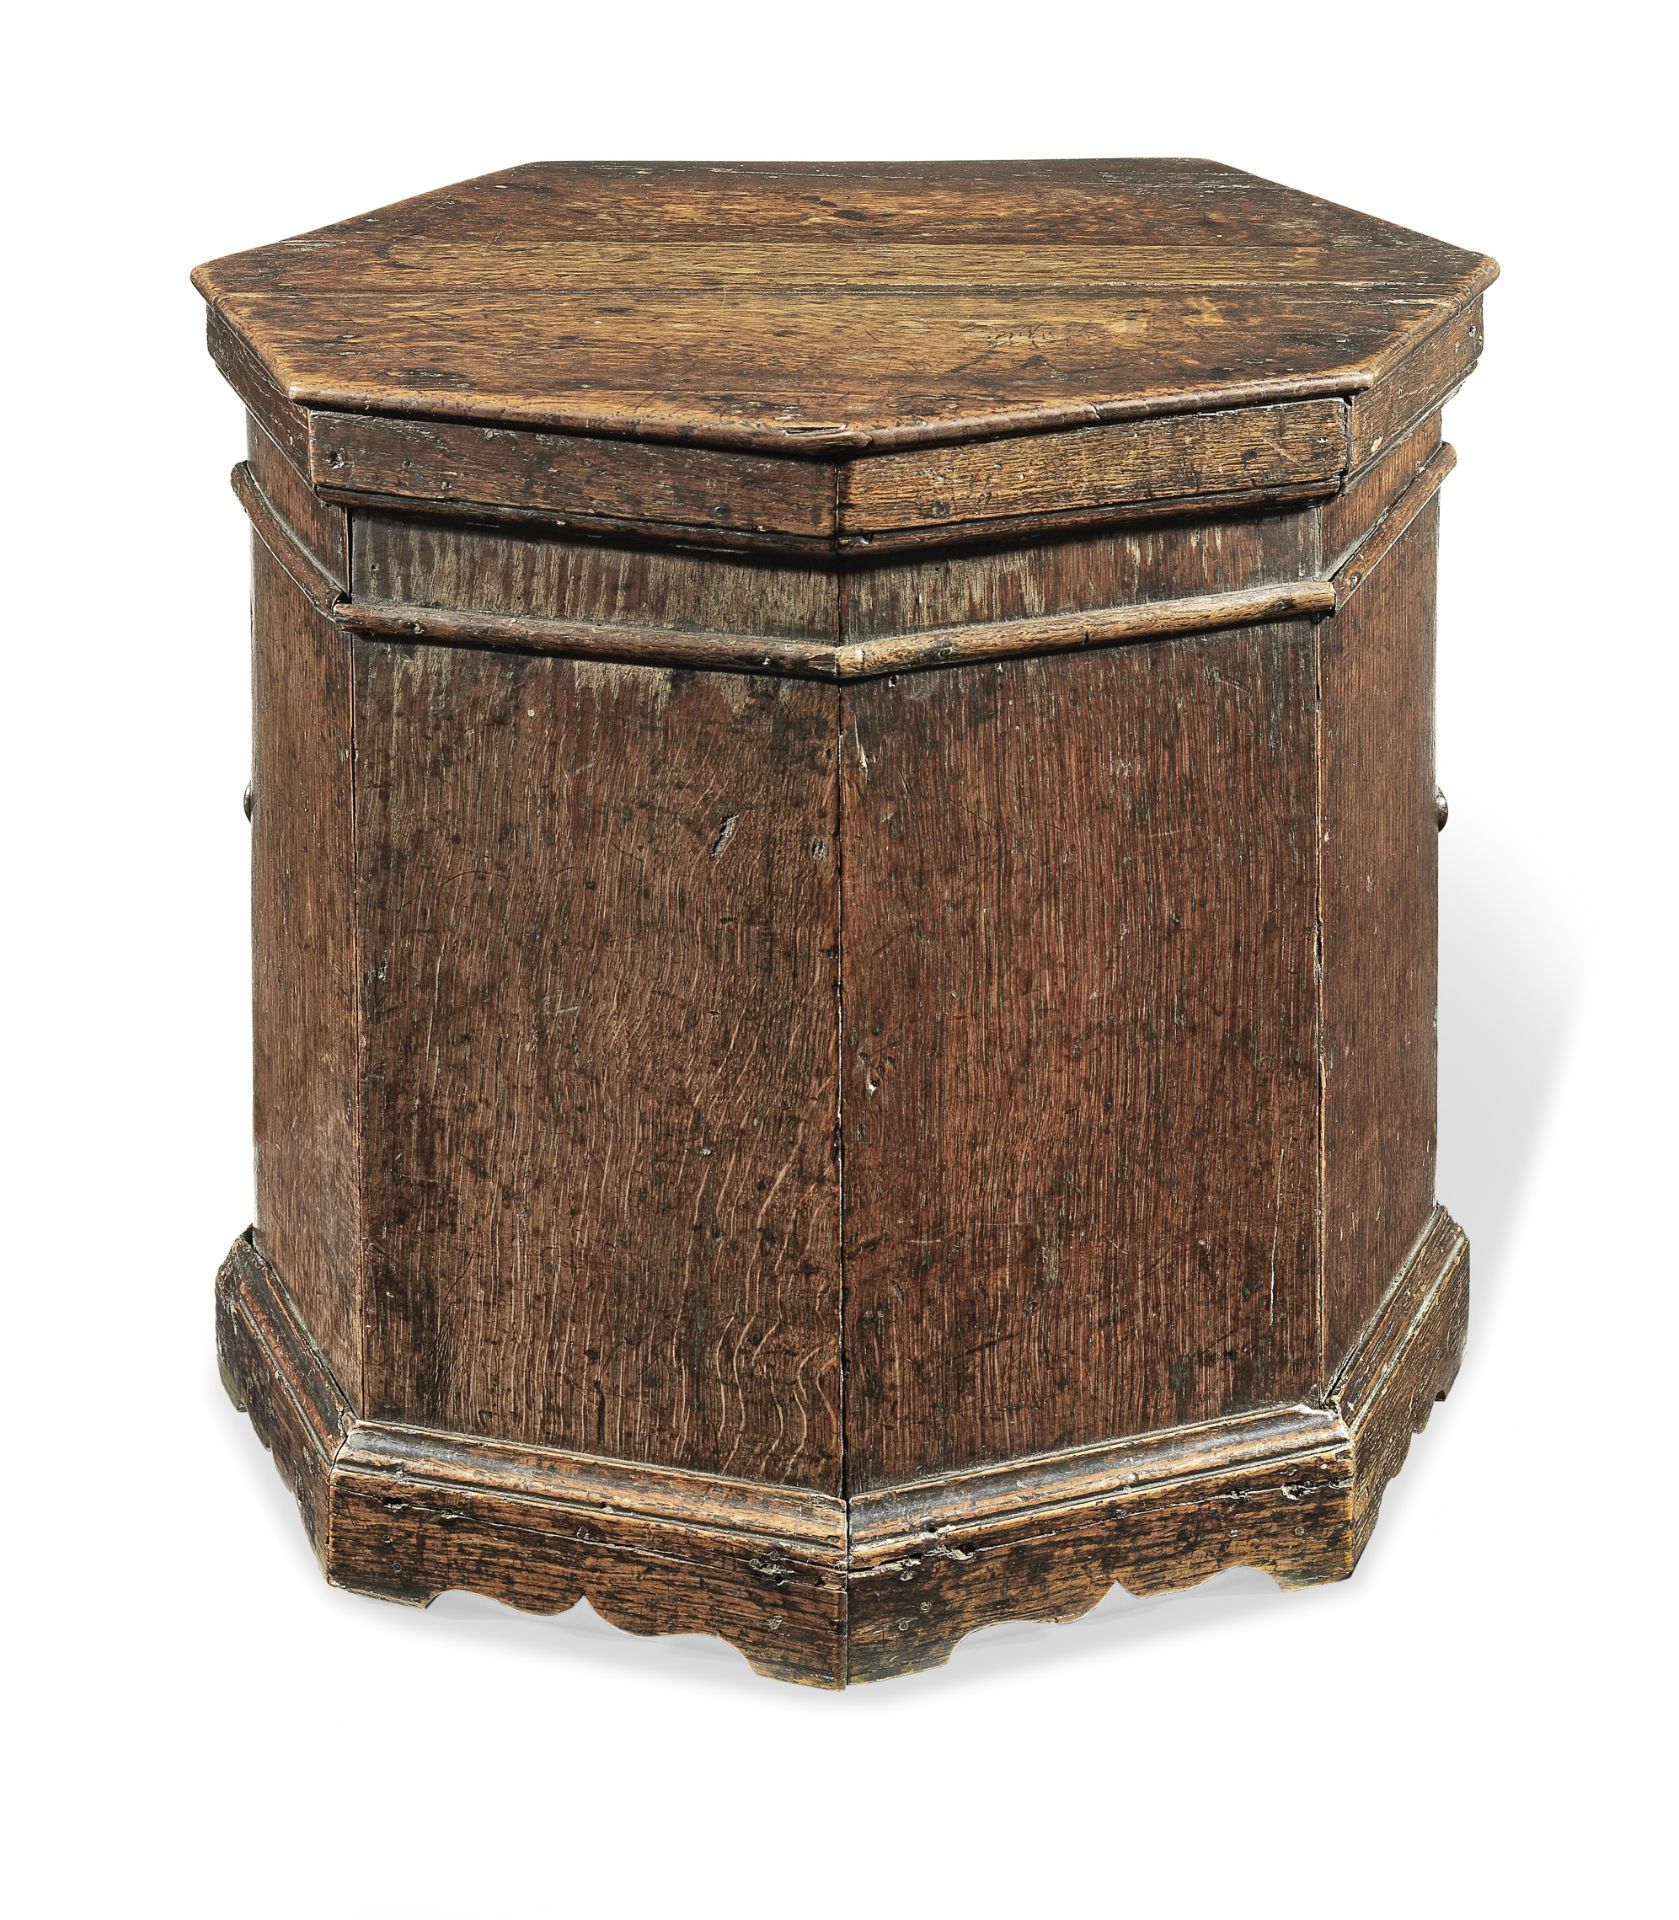 A George II oak close stool, circa 1730-40